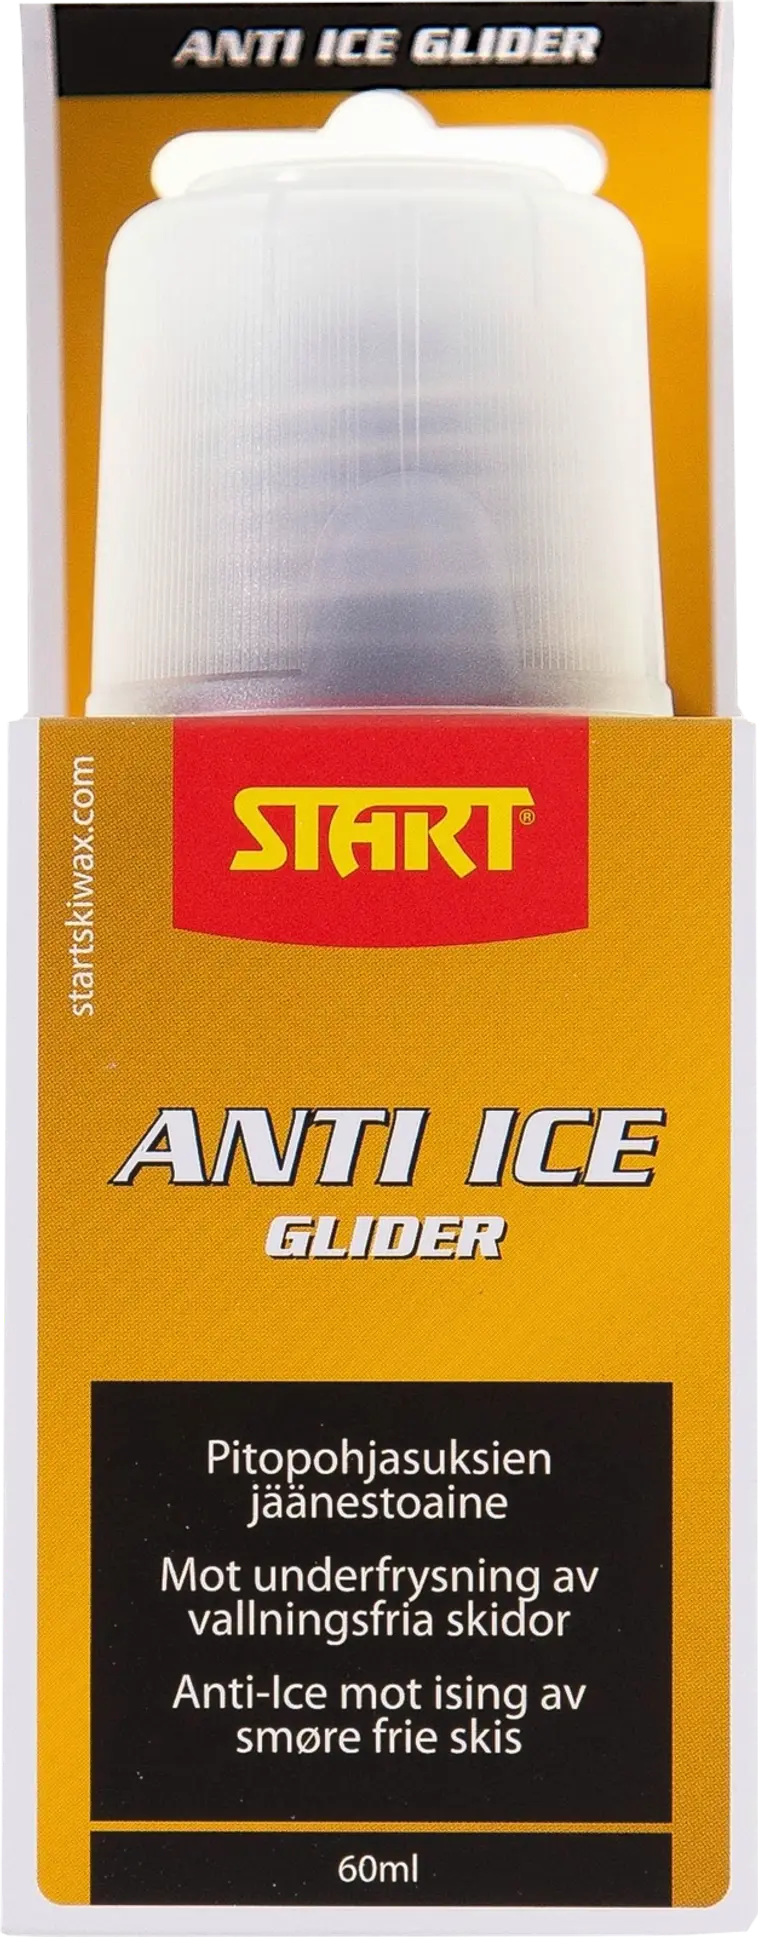 Start Anti Ice Glider pitopohjasuksien jäänestoaine 60 ml